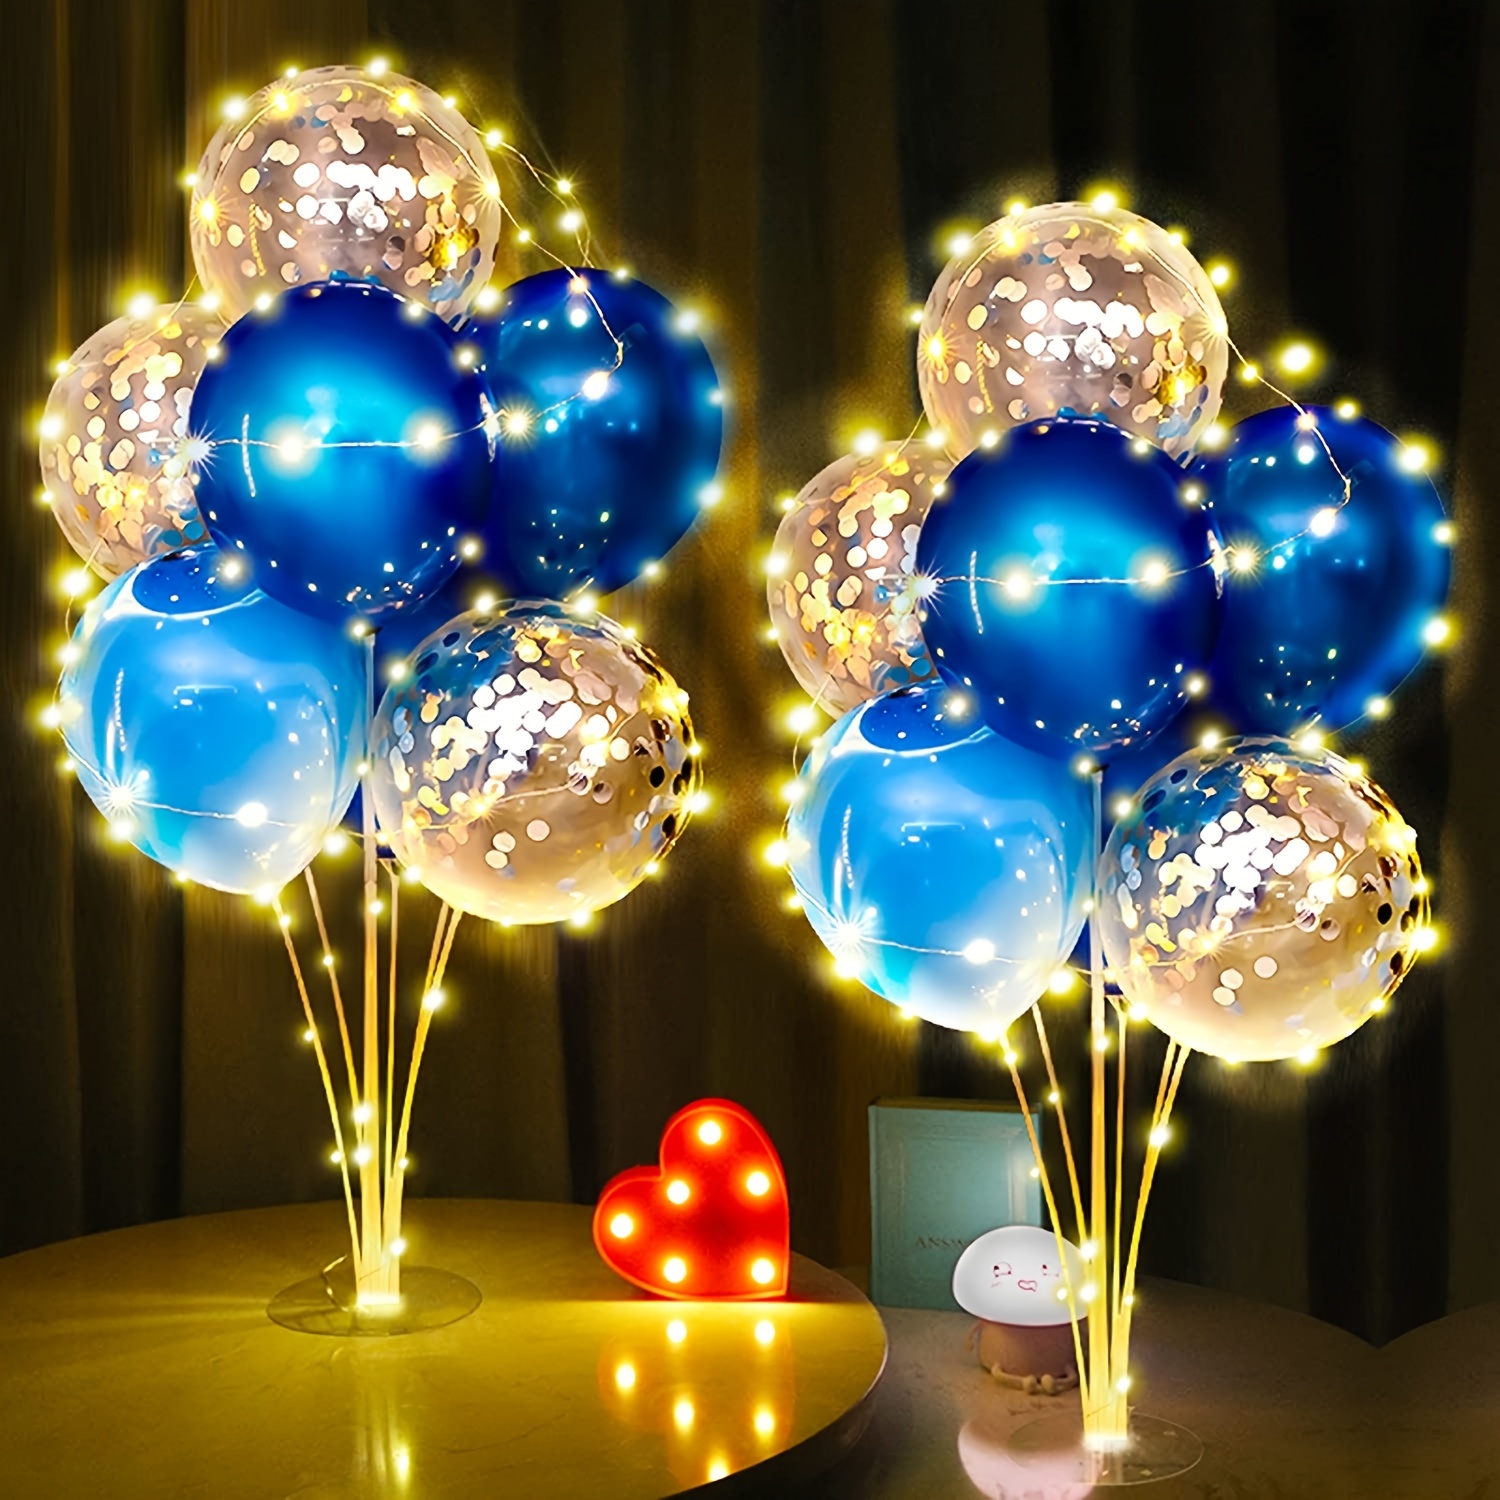 Ballons de décoration de fête d'anniversaire sur le thème de